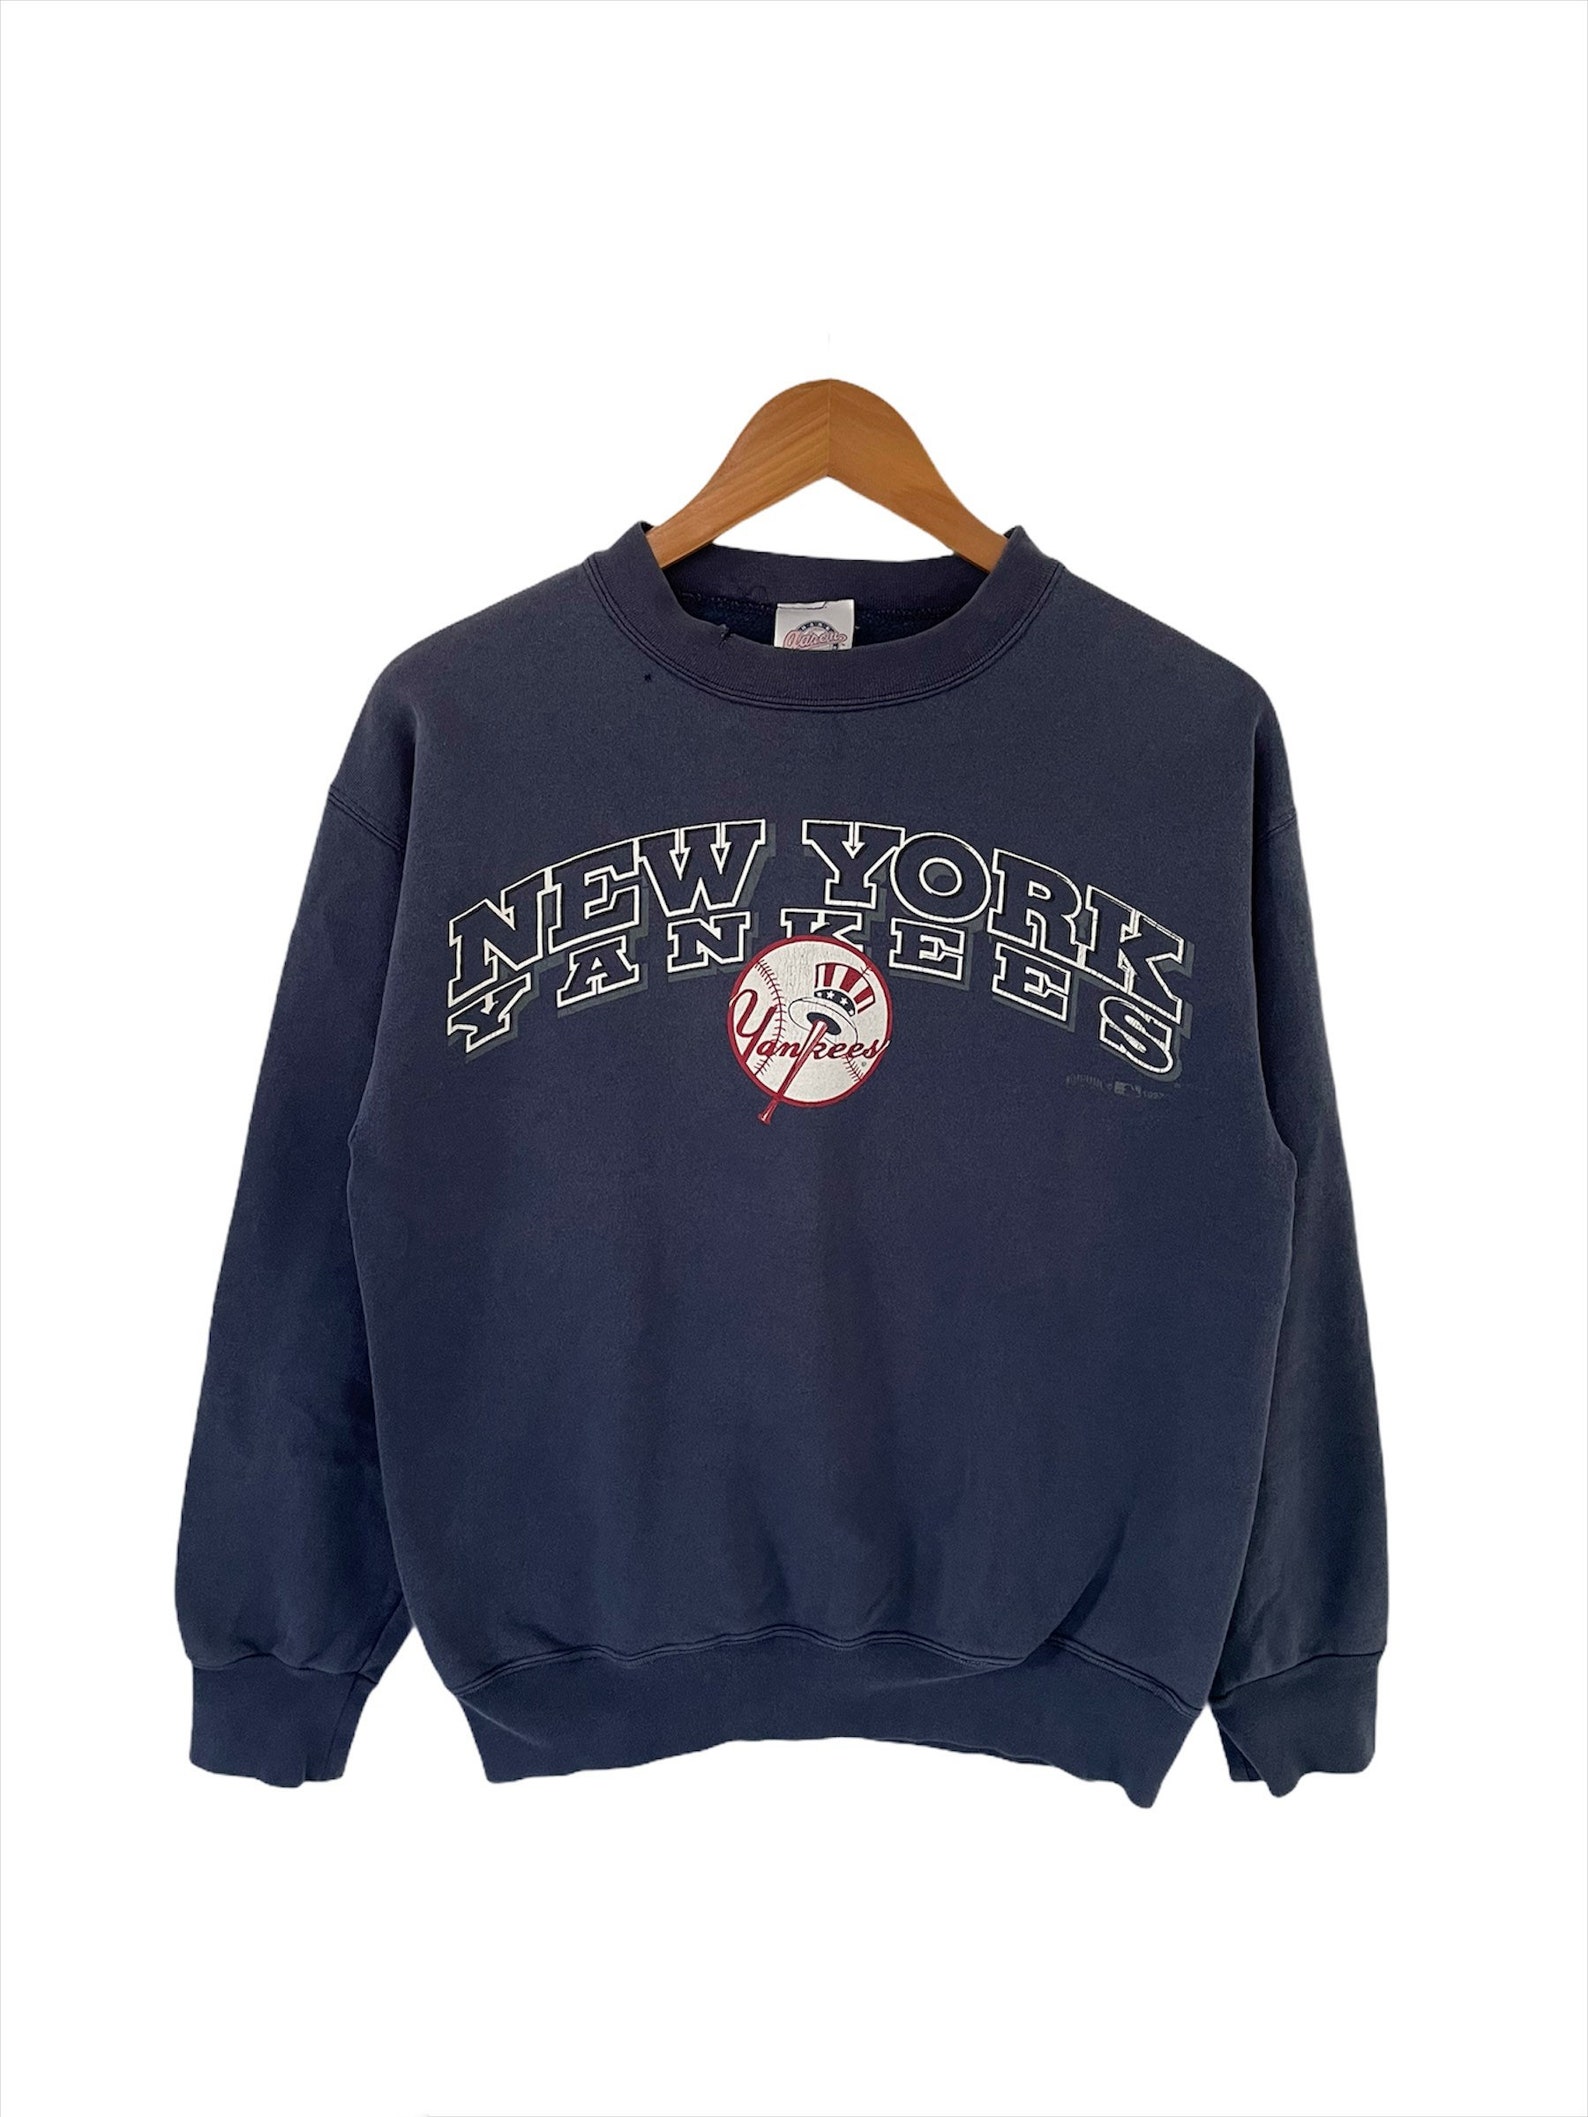 Rare Vintage 1997 New York Yankees By Hank Aaron Sweatshirt | Etsy